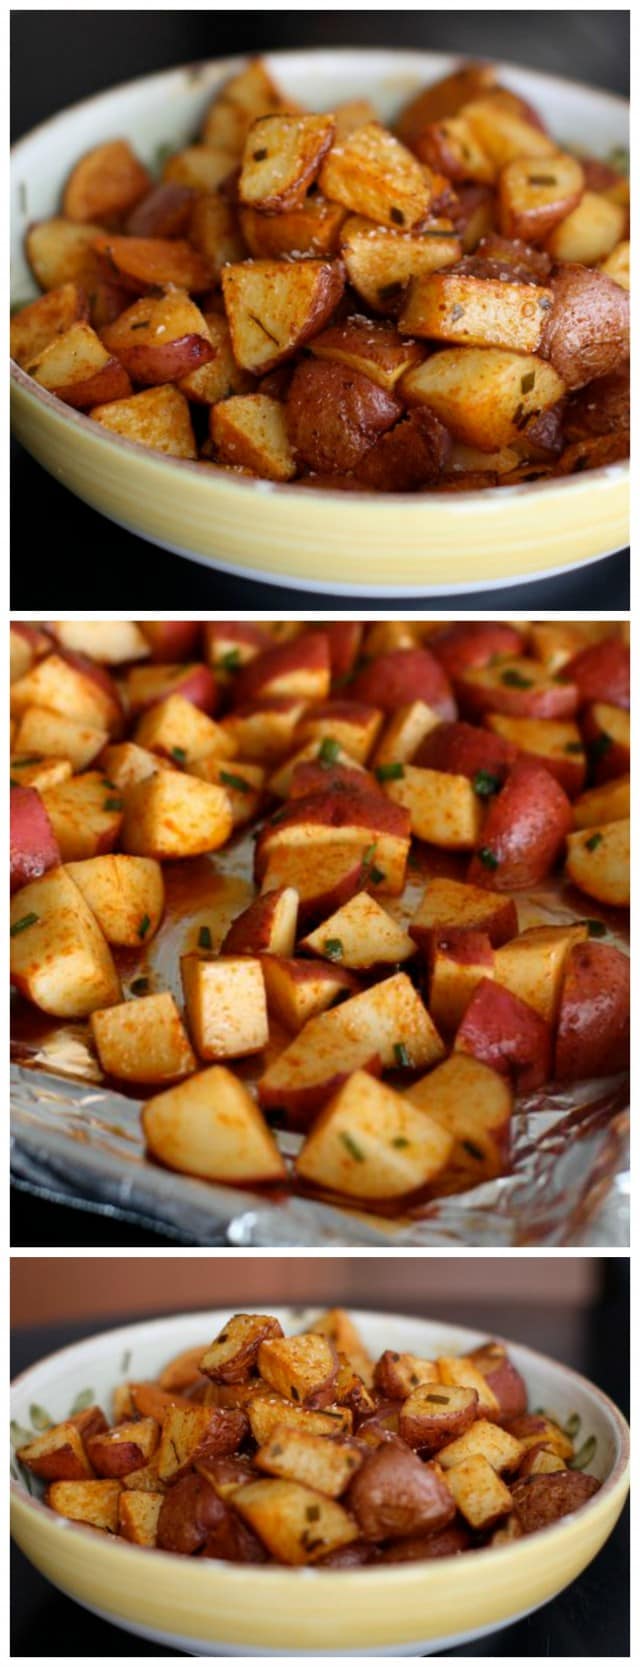 Les pommes de terre rouges rôties au paprika fumé sont un plat d'accompagnement facile et sain à ajouter à n'importe quel repas.